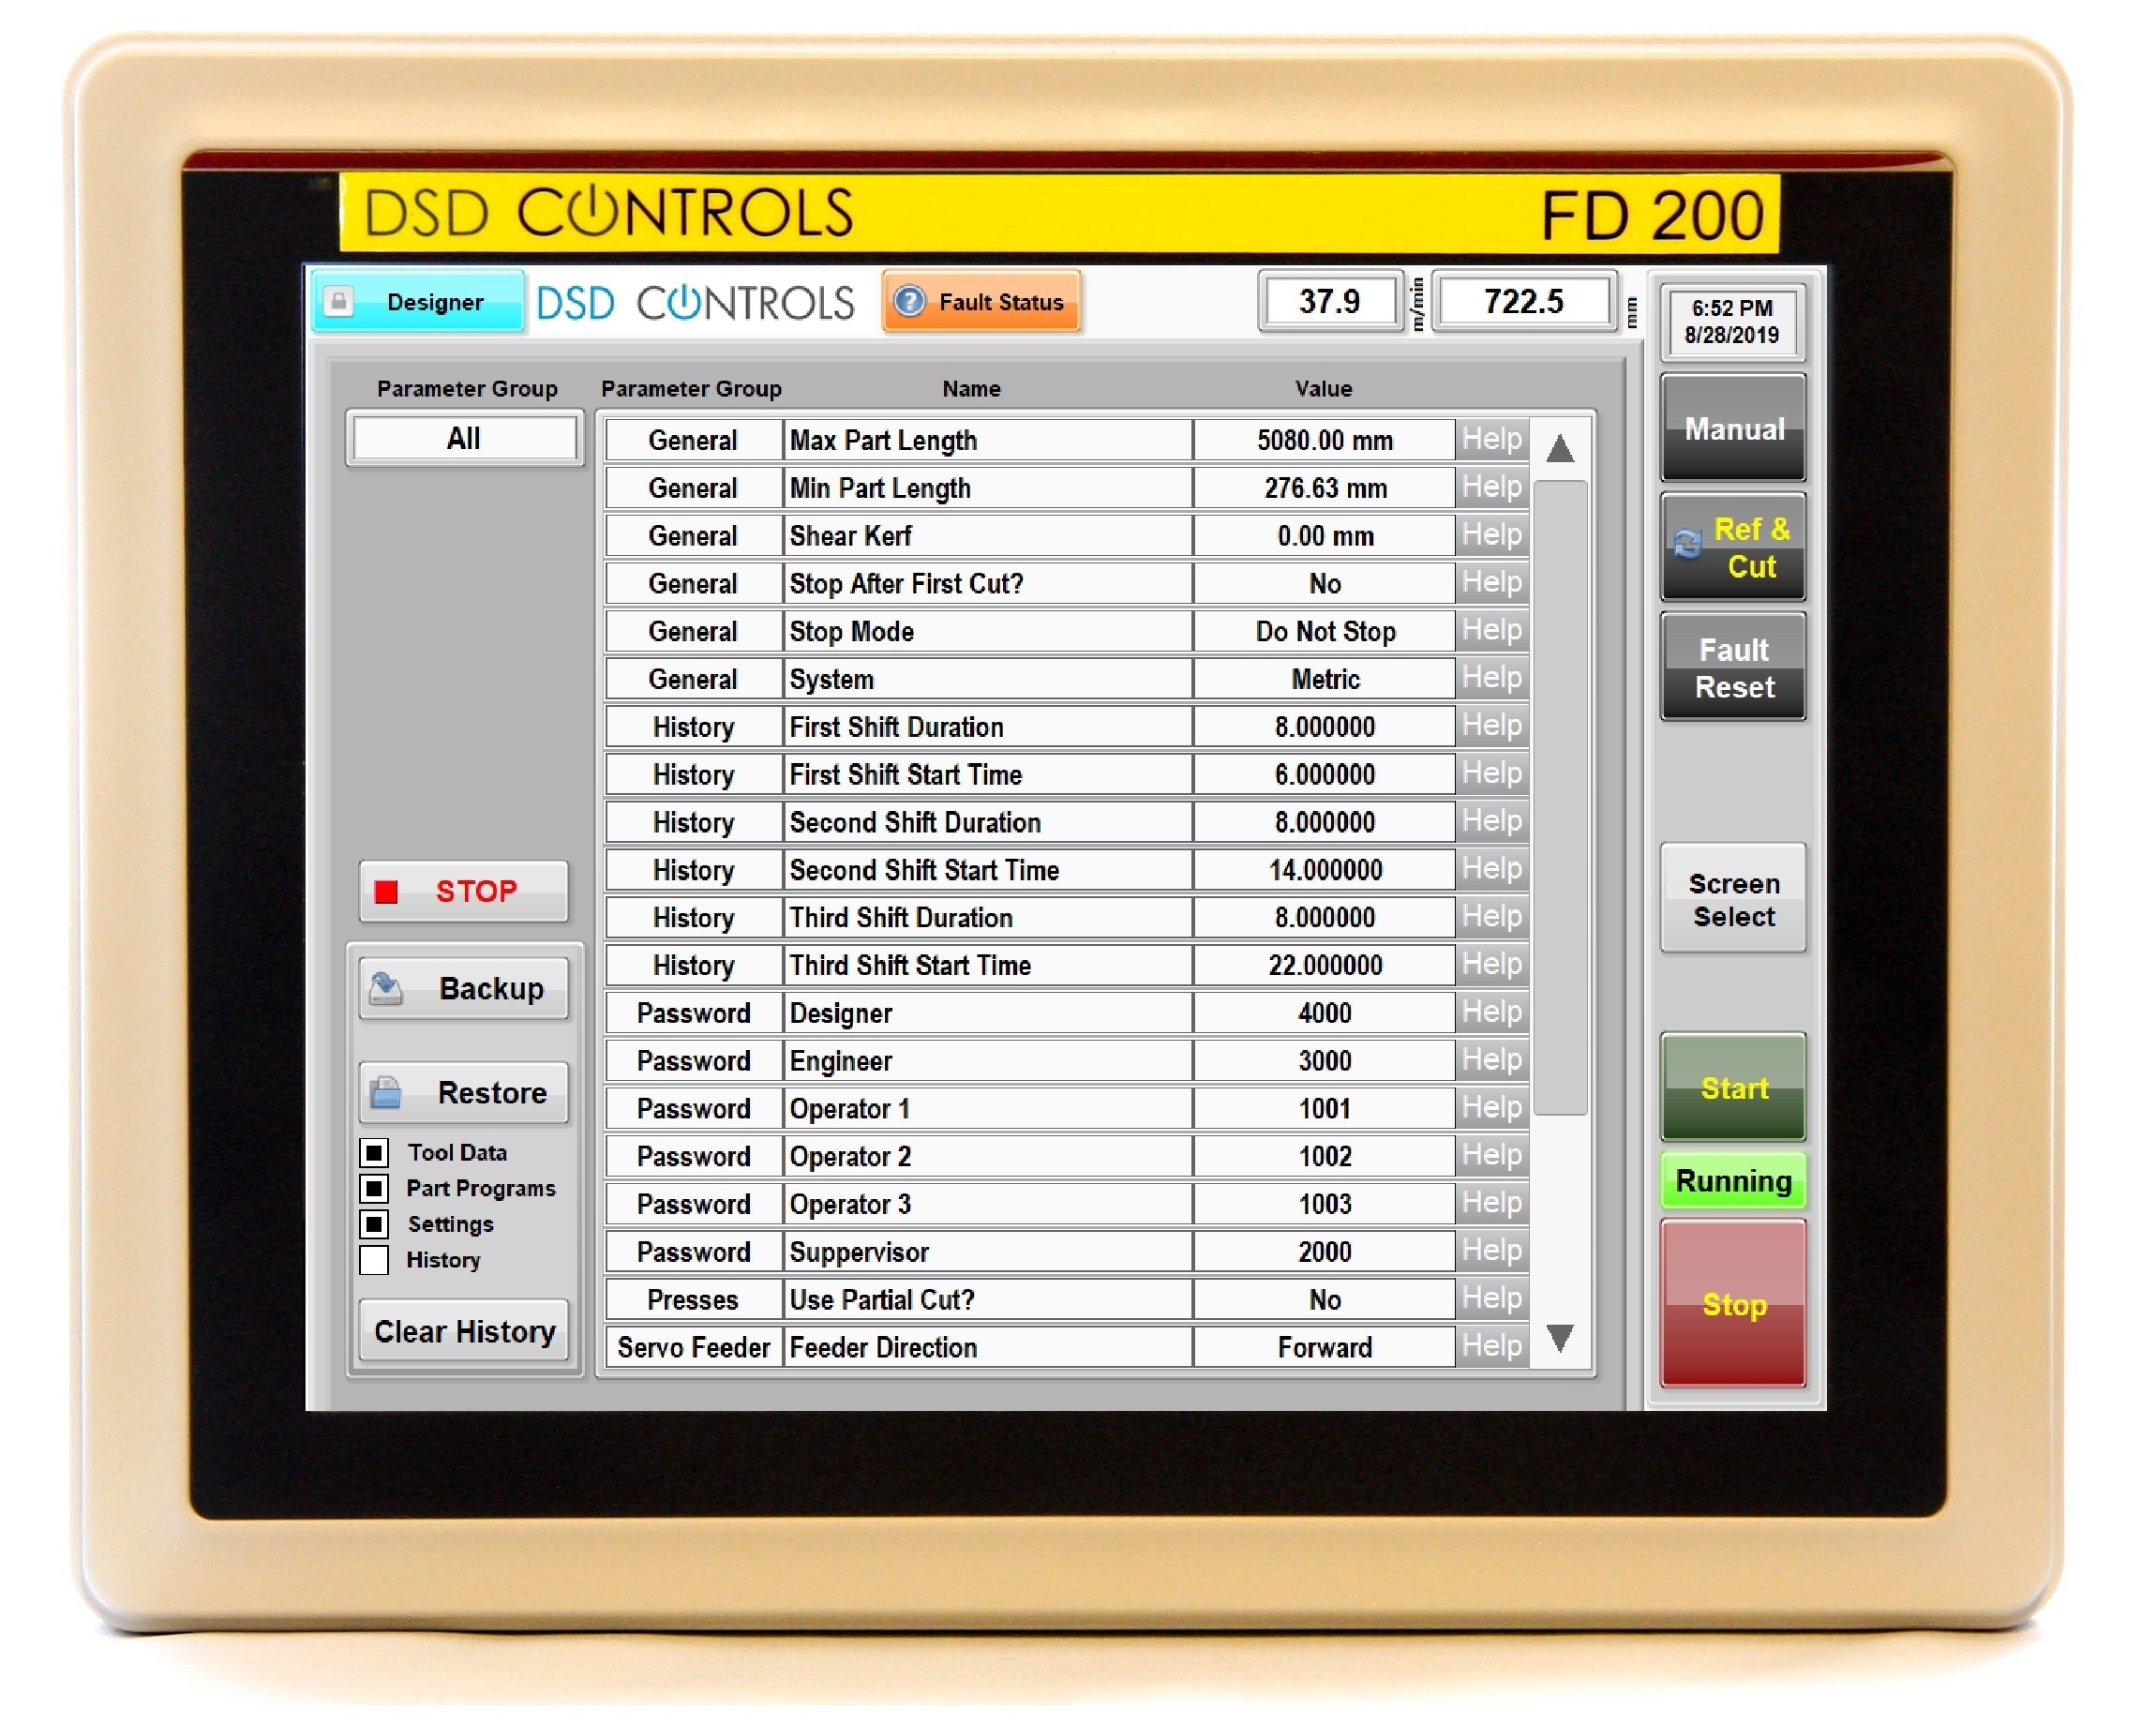 FD200 - Settings Screen